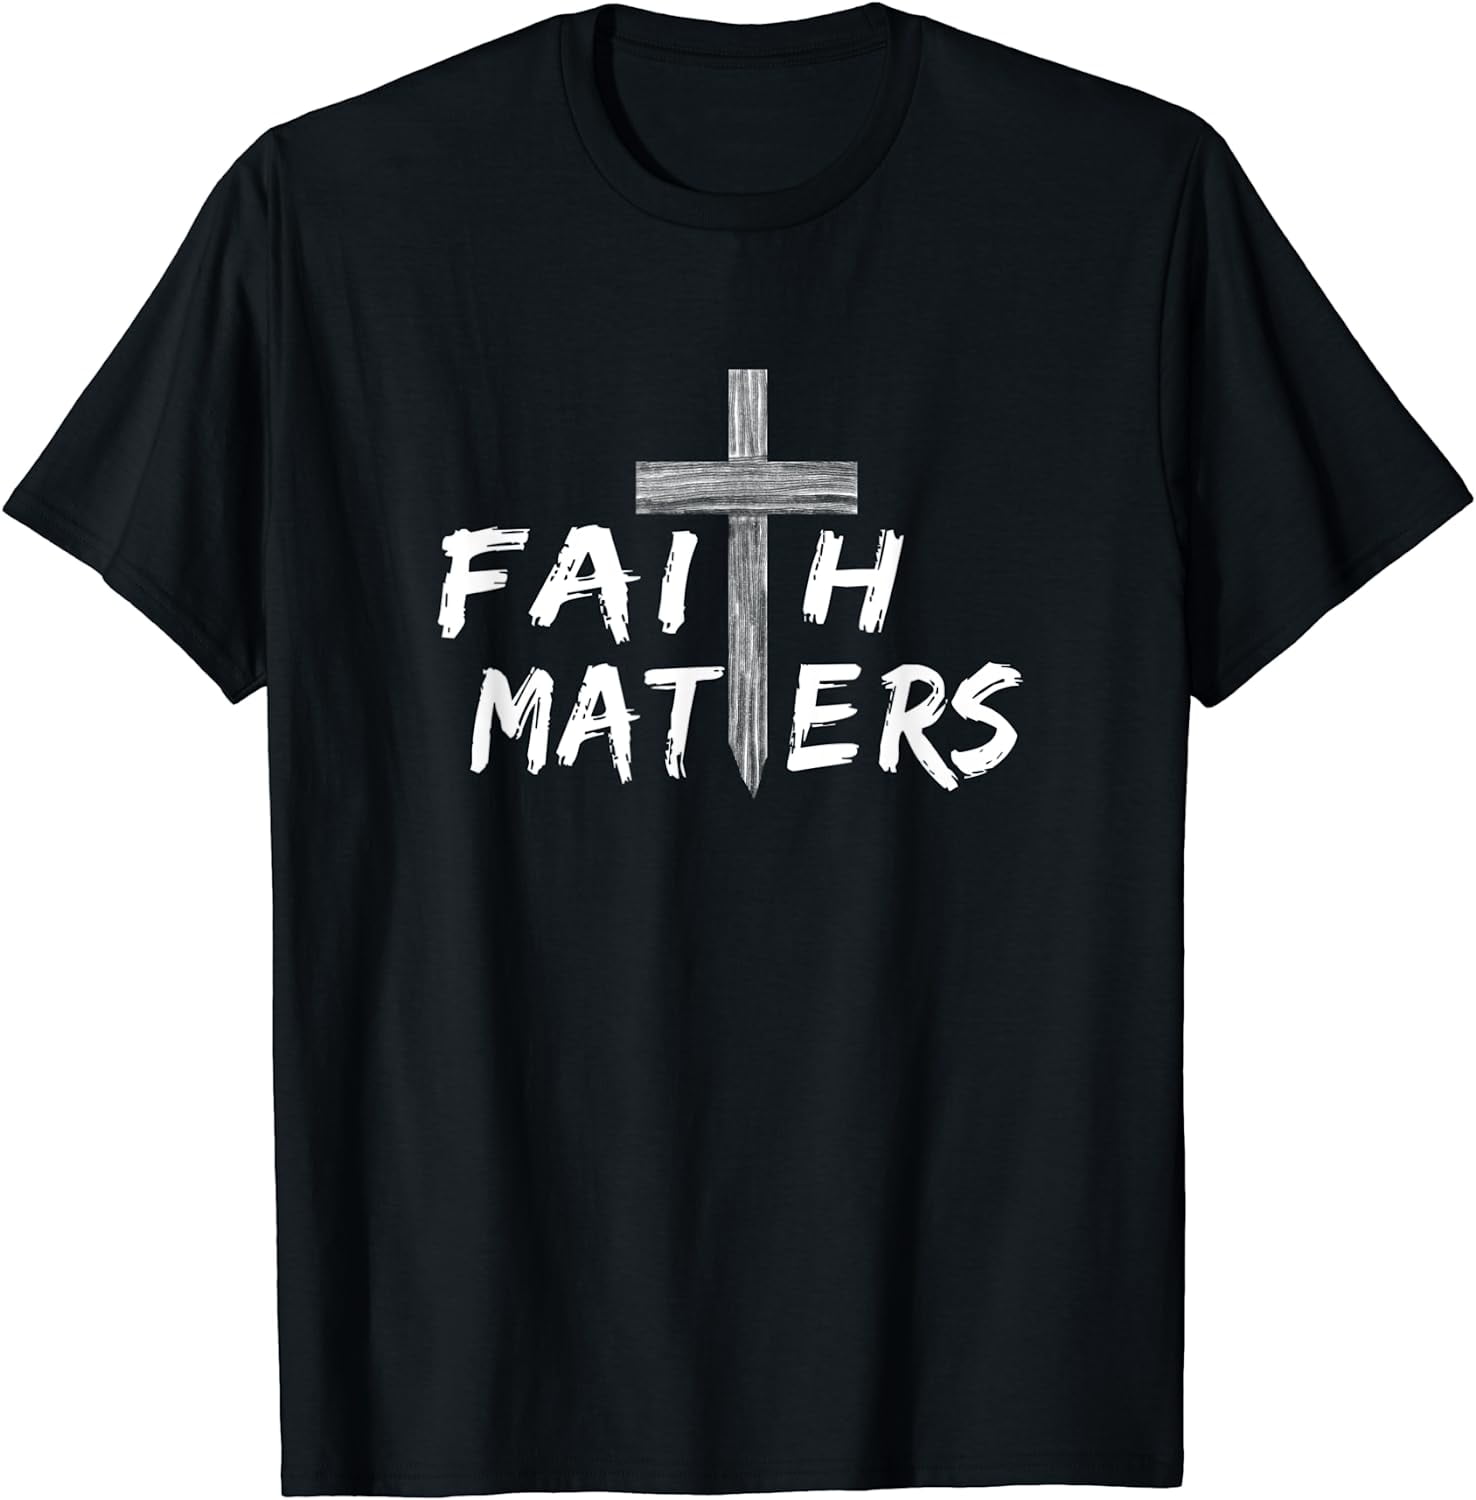 Christian Faith Matters with Cross - Christian Faith T-Shirt - Walmart.com